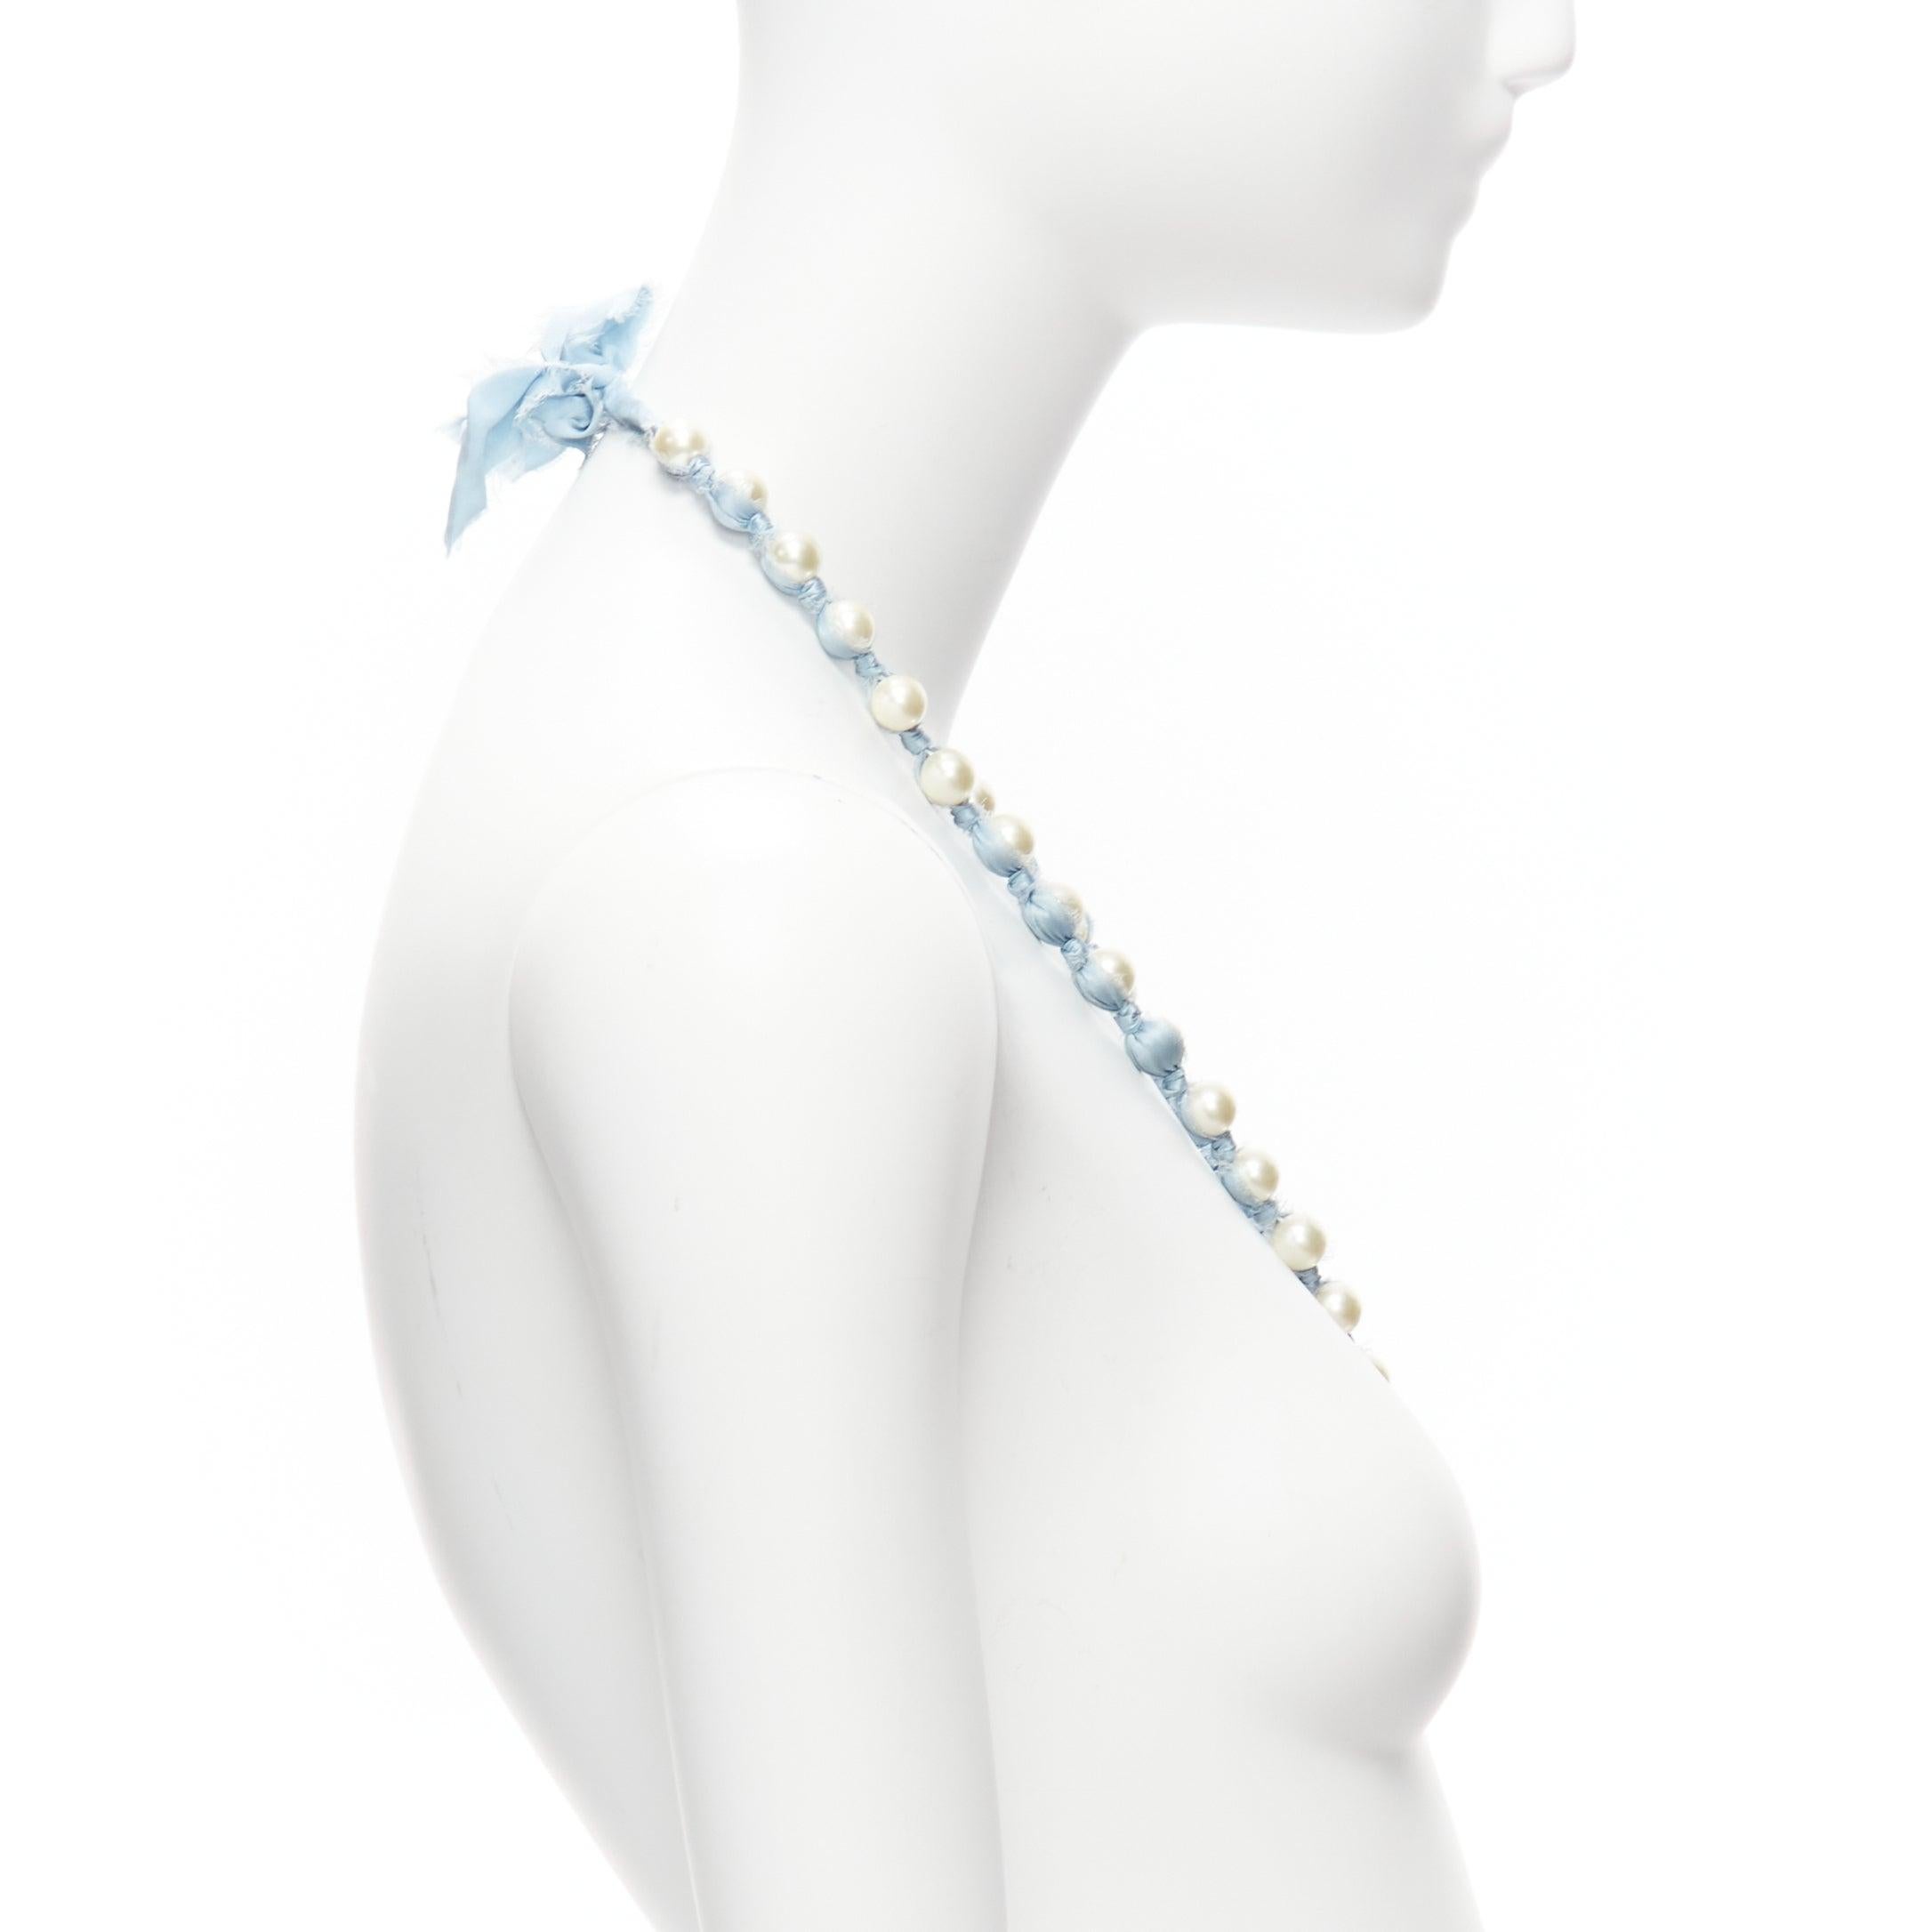 LANVIN ALBER ELBAZ, long collier enveloppant un ruban de soie bleu perle crème Pour femmes en vente